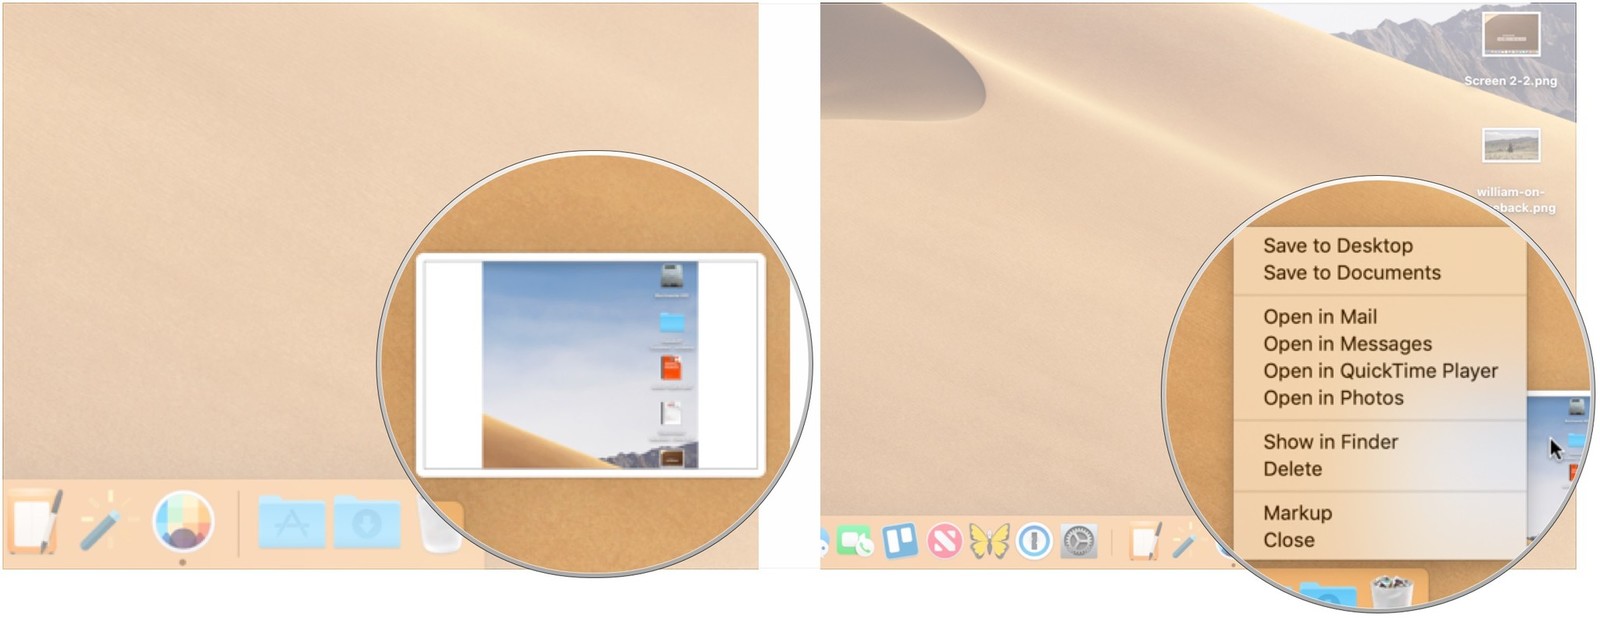 screenshot e screencast su macOS Mojave